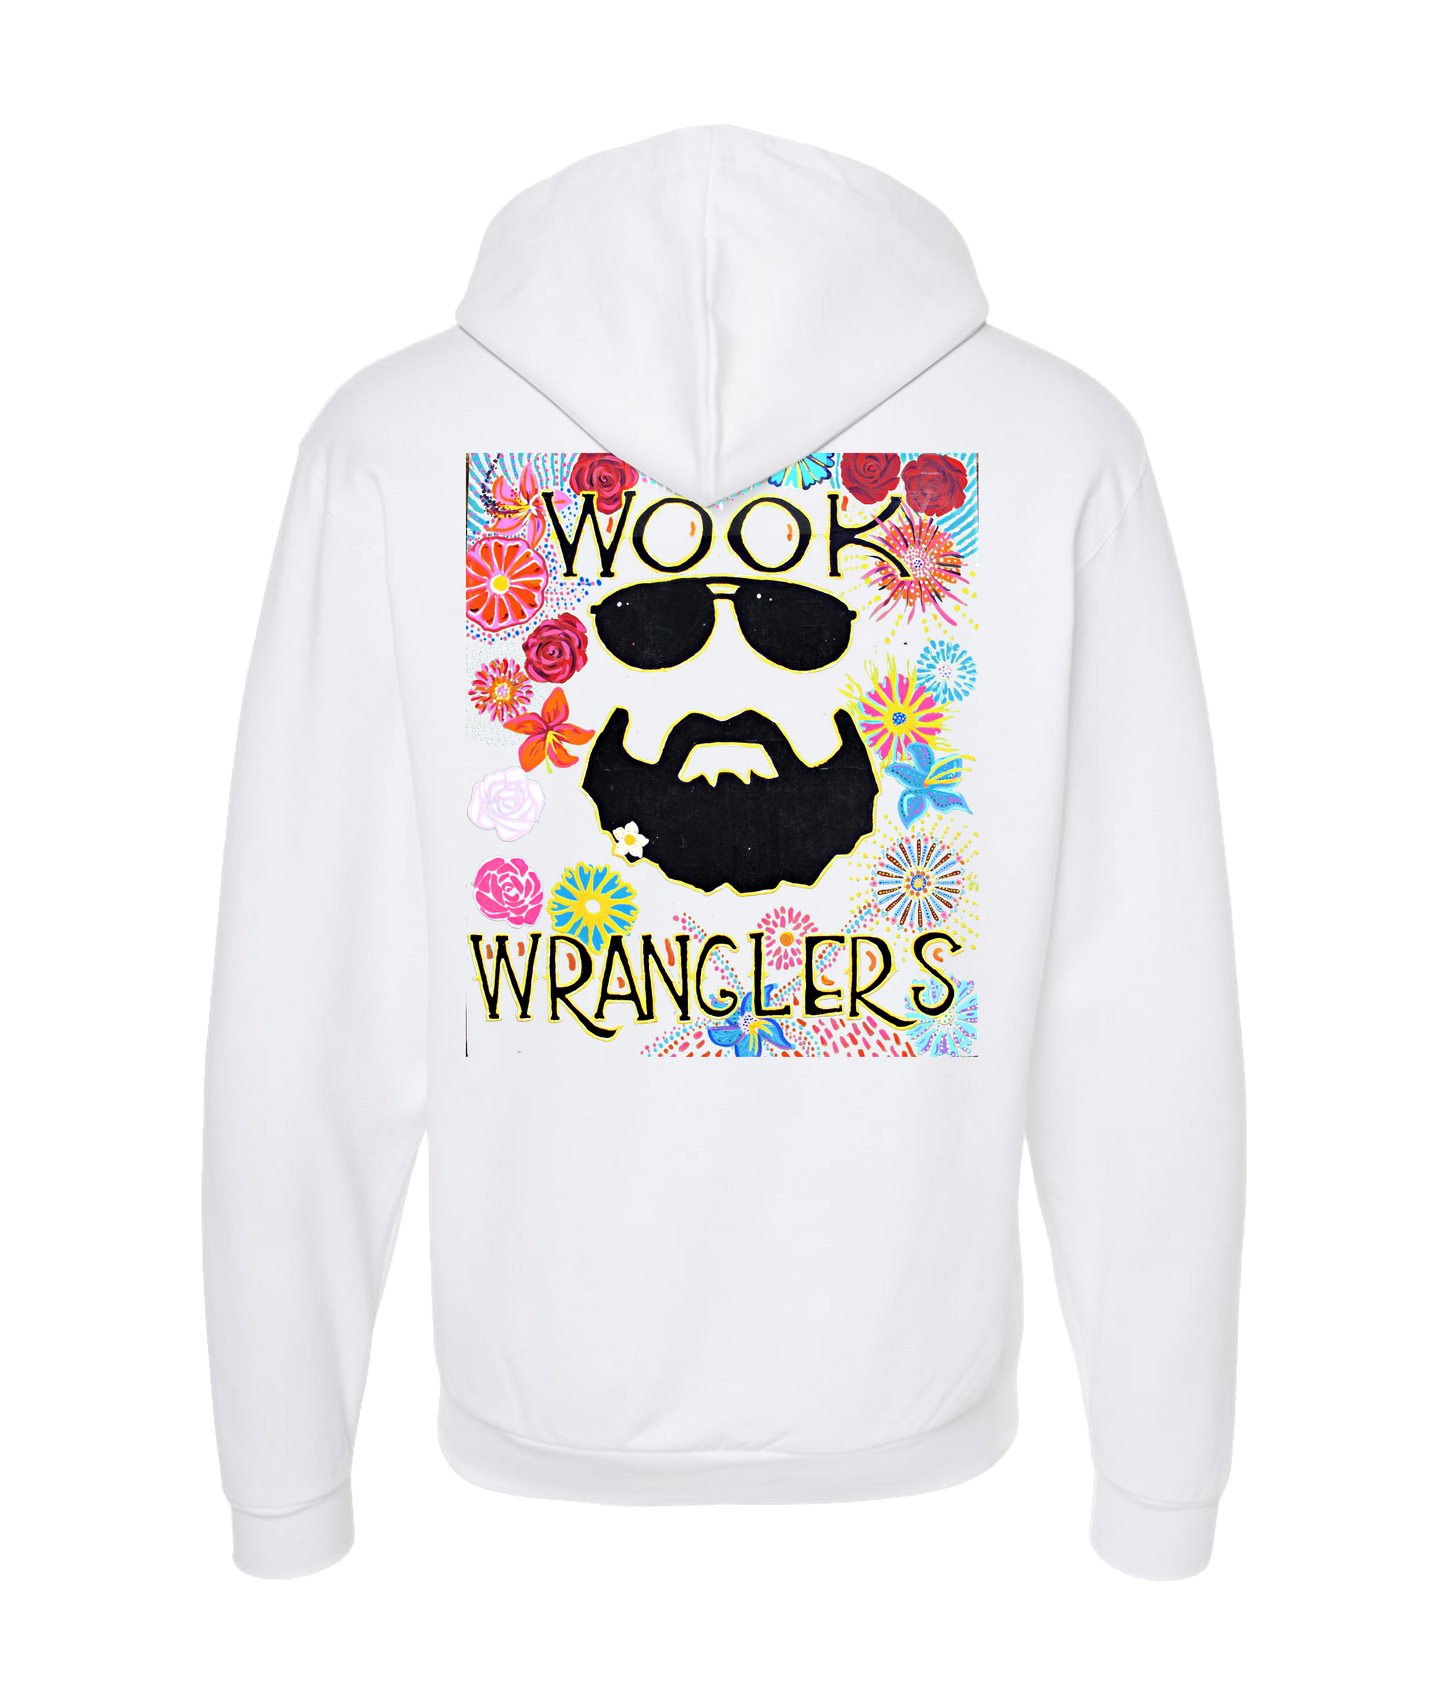 Wook Wranglers - Flowers - White Zip Up Hoodie